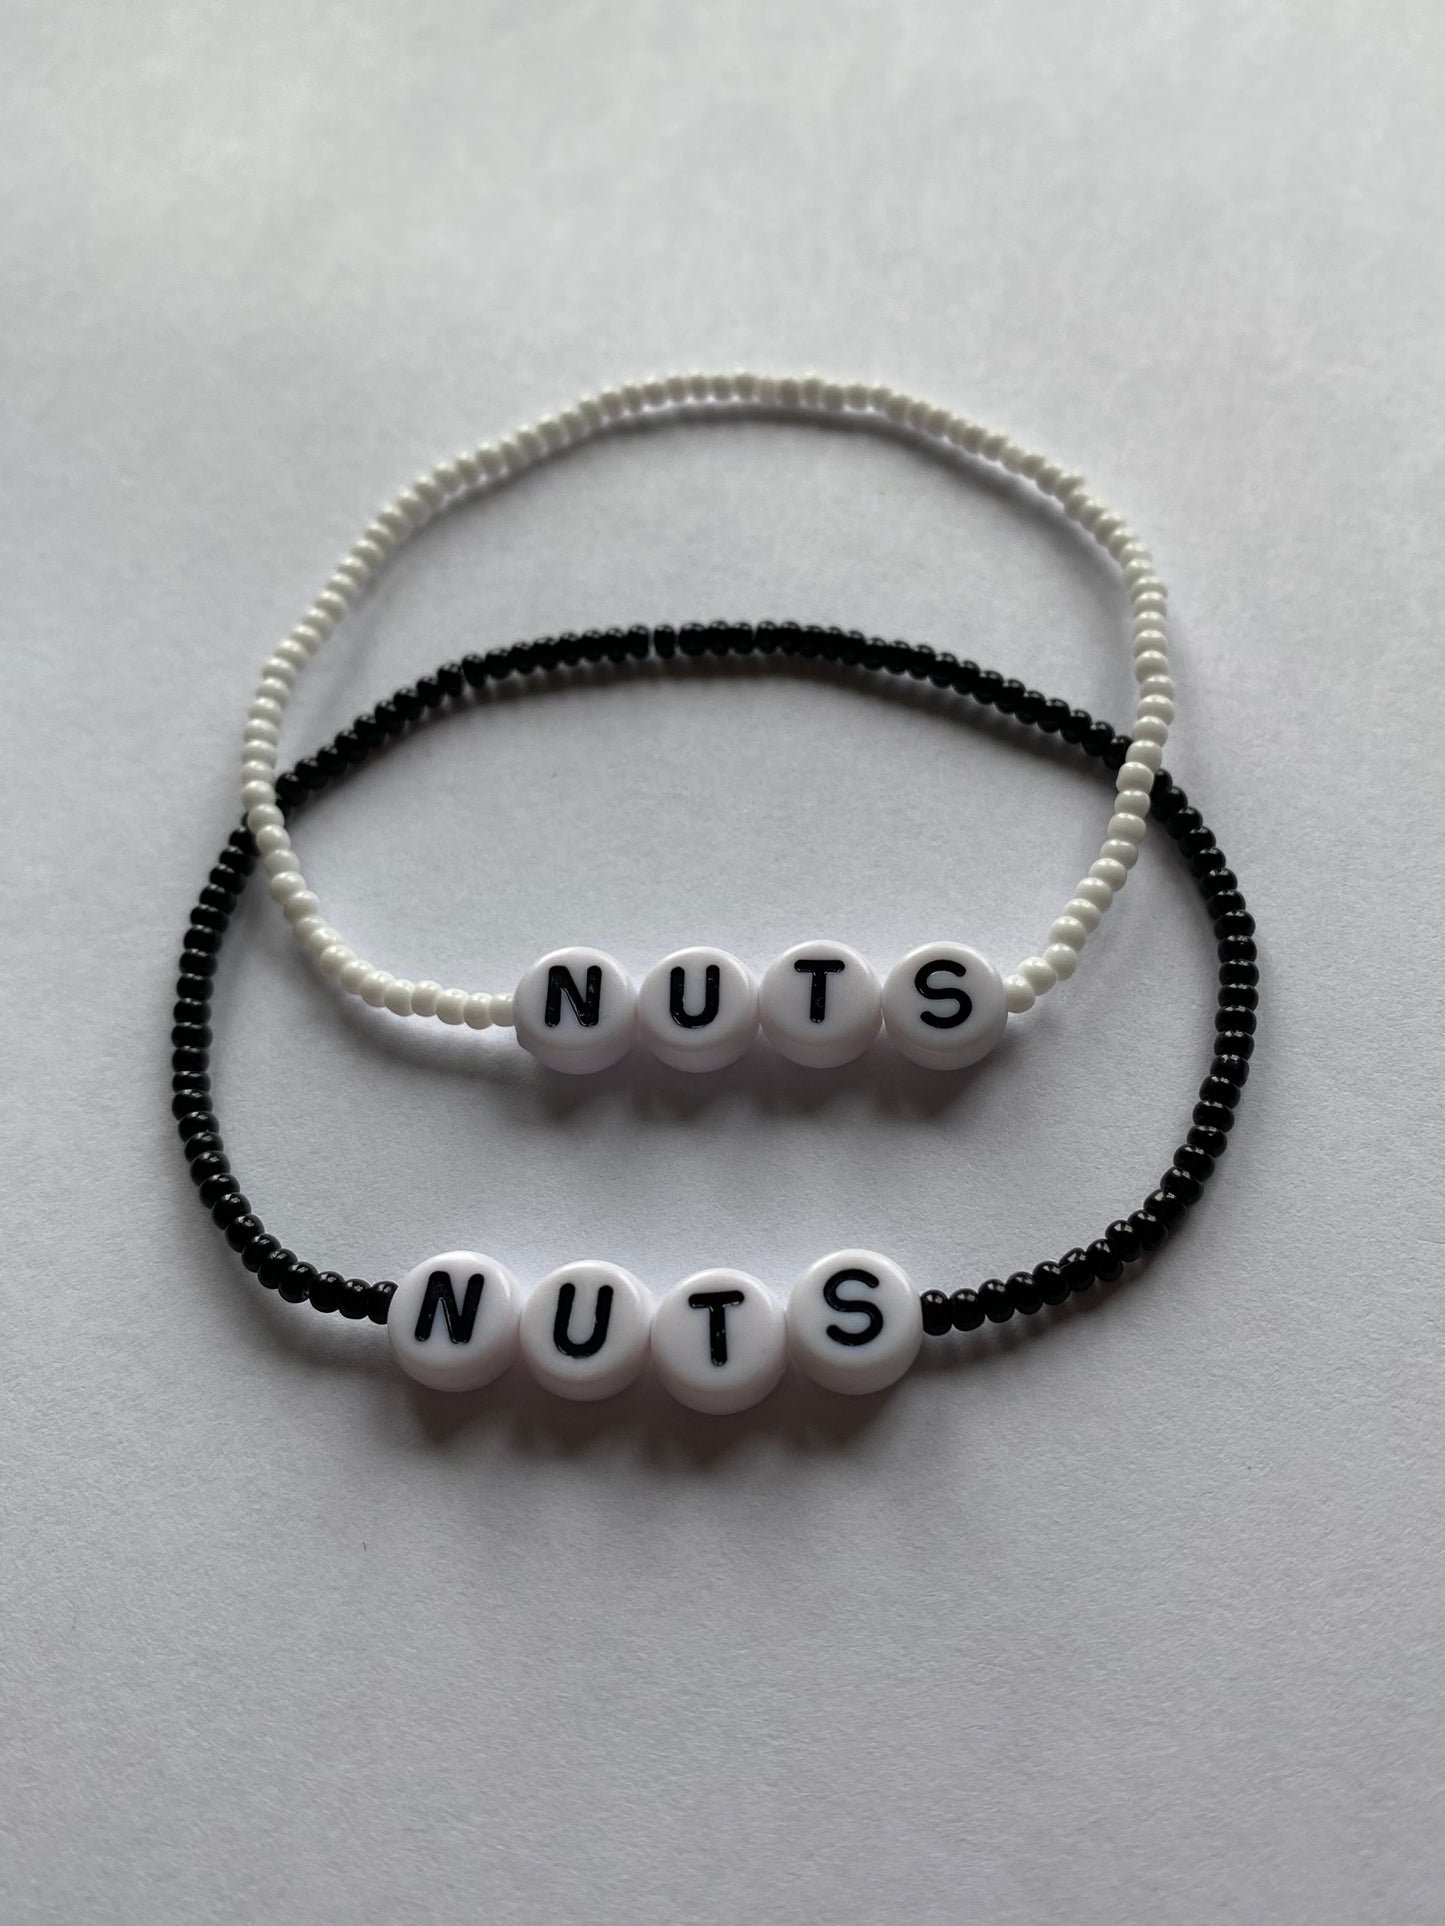 Nuts matching bracelets